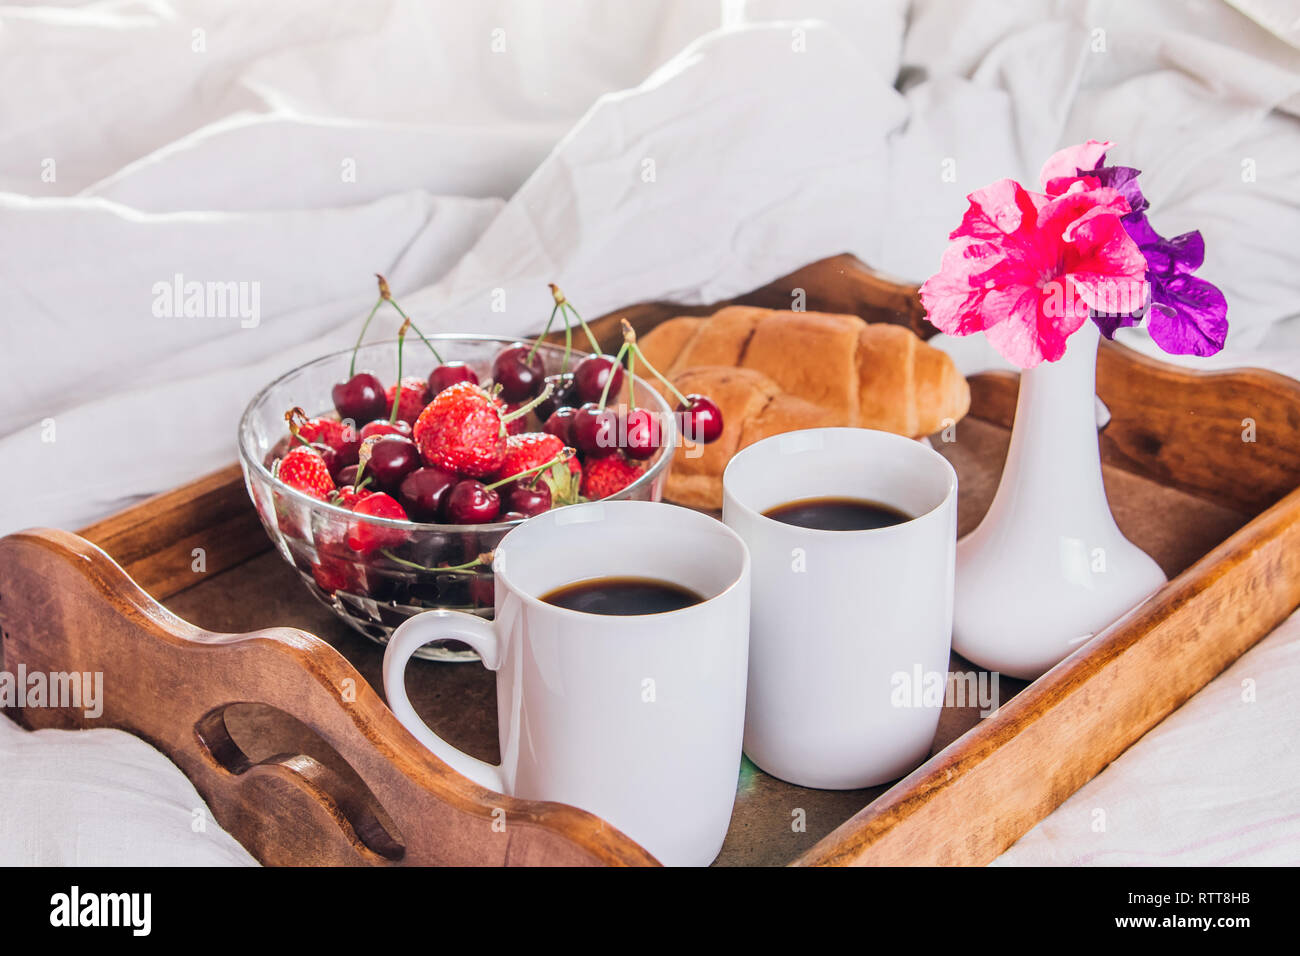 Frühstück im Bett für zwei serviert auf einem Tablett für Valentines Tag.  Kaffee mit Gipfeli und Früchten Stockfotografie - Alamy